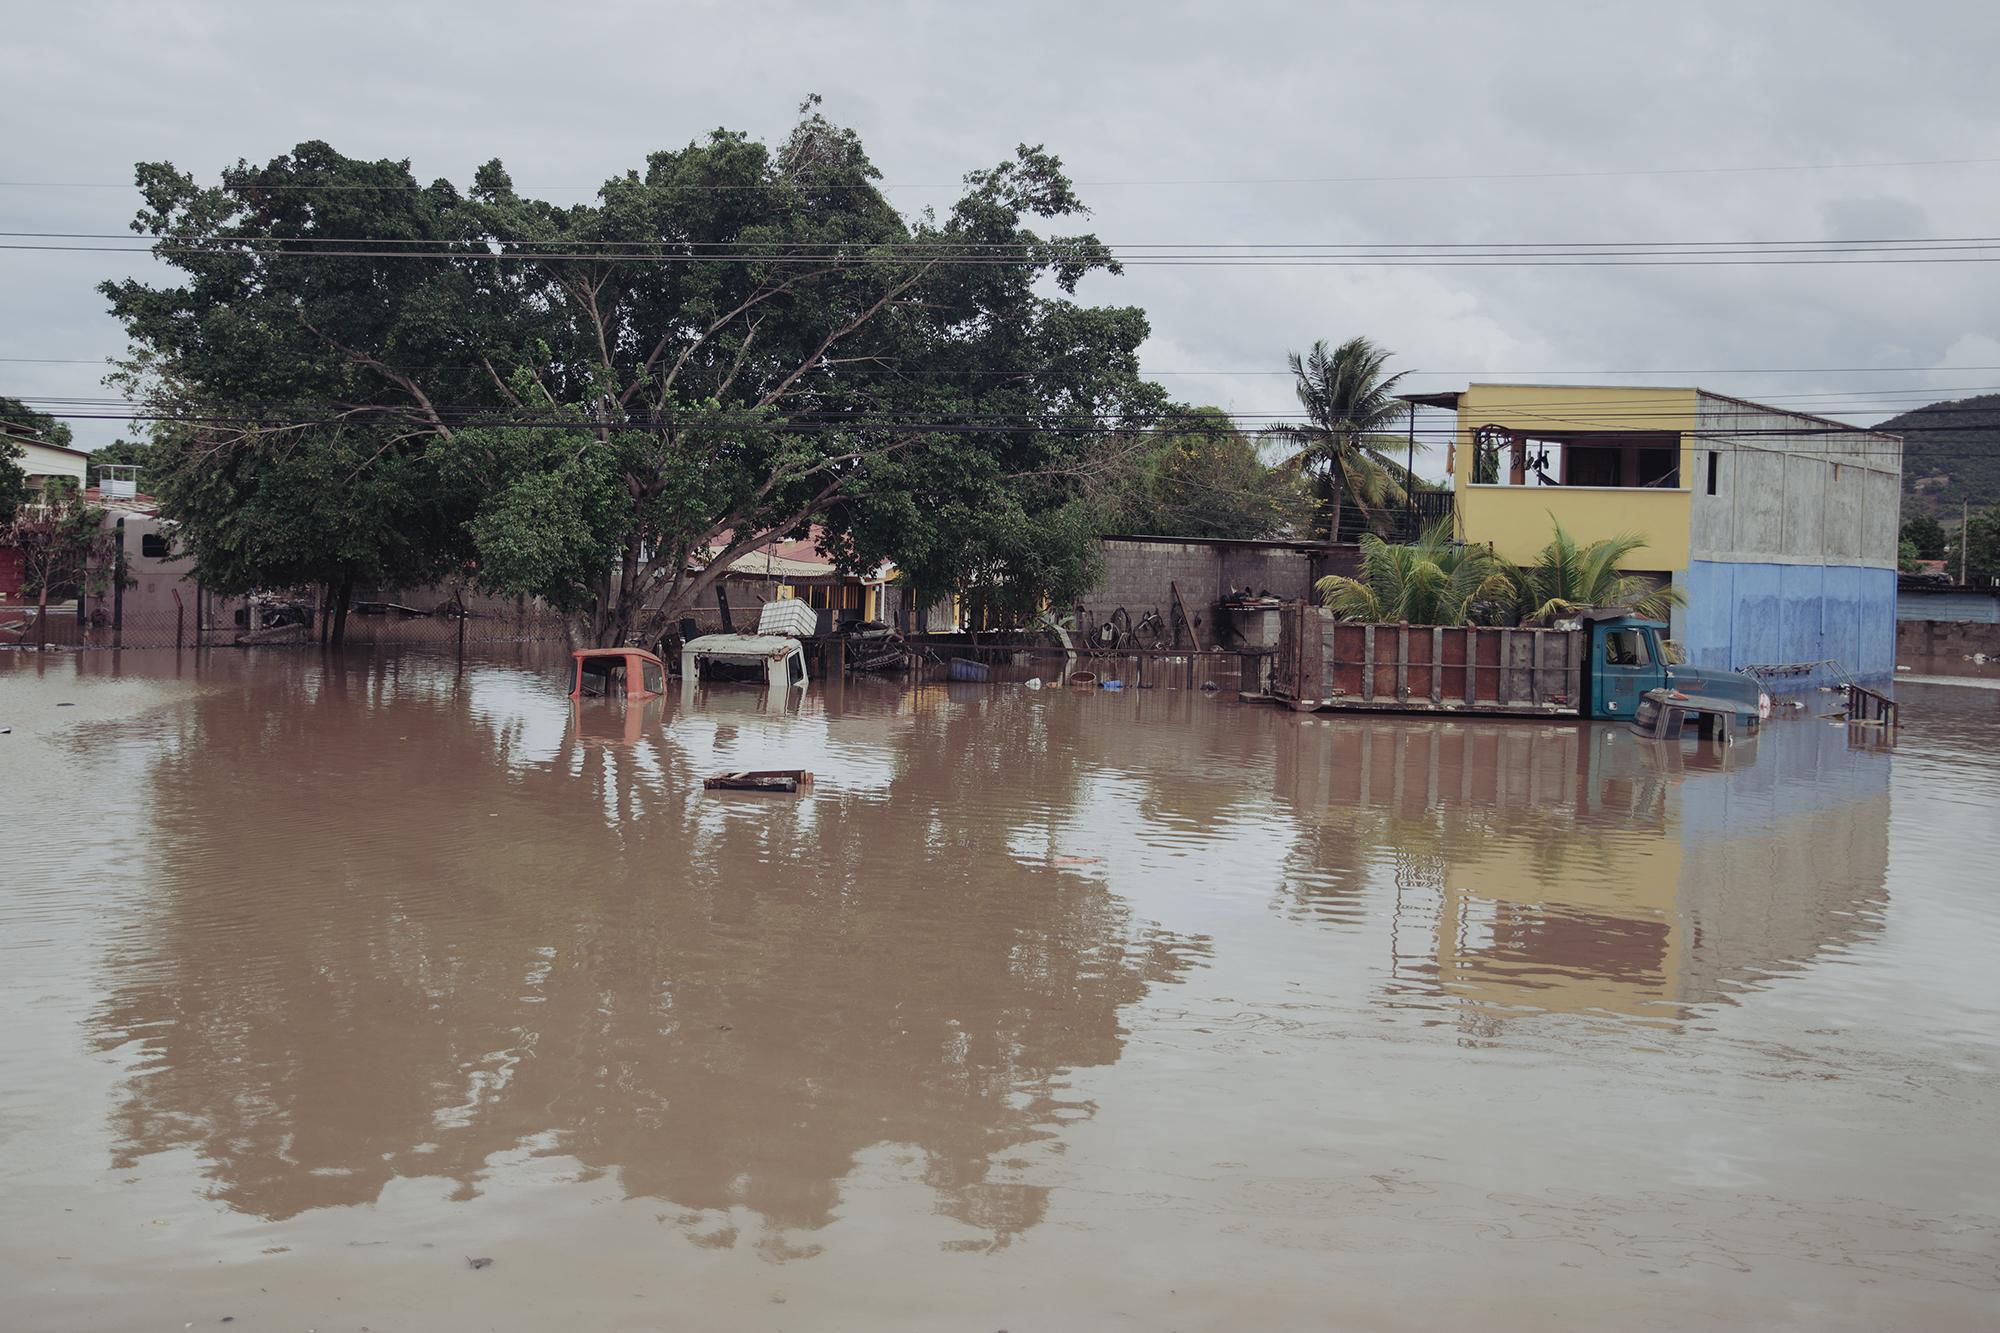 Camiones y casas inundadas en el municipio de Pimienta debido al desbordamineto del río Ulúa, uno de los más caudalosos de Honduras. Las pérdidas económicas aún son imposibles de calcular.